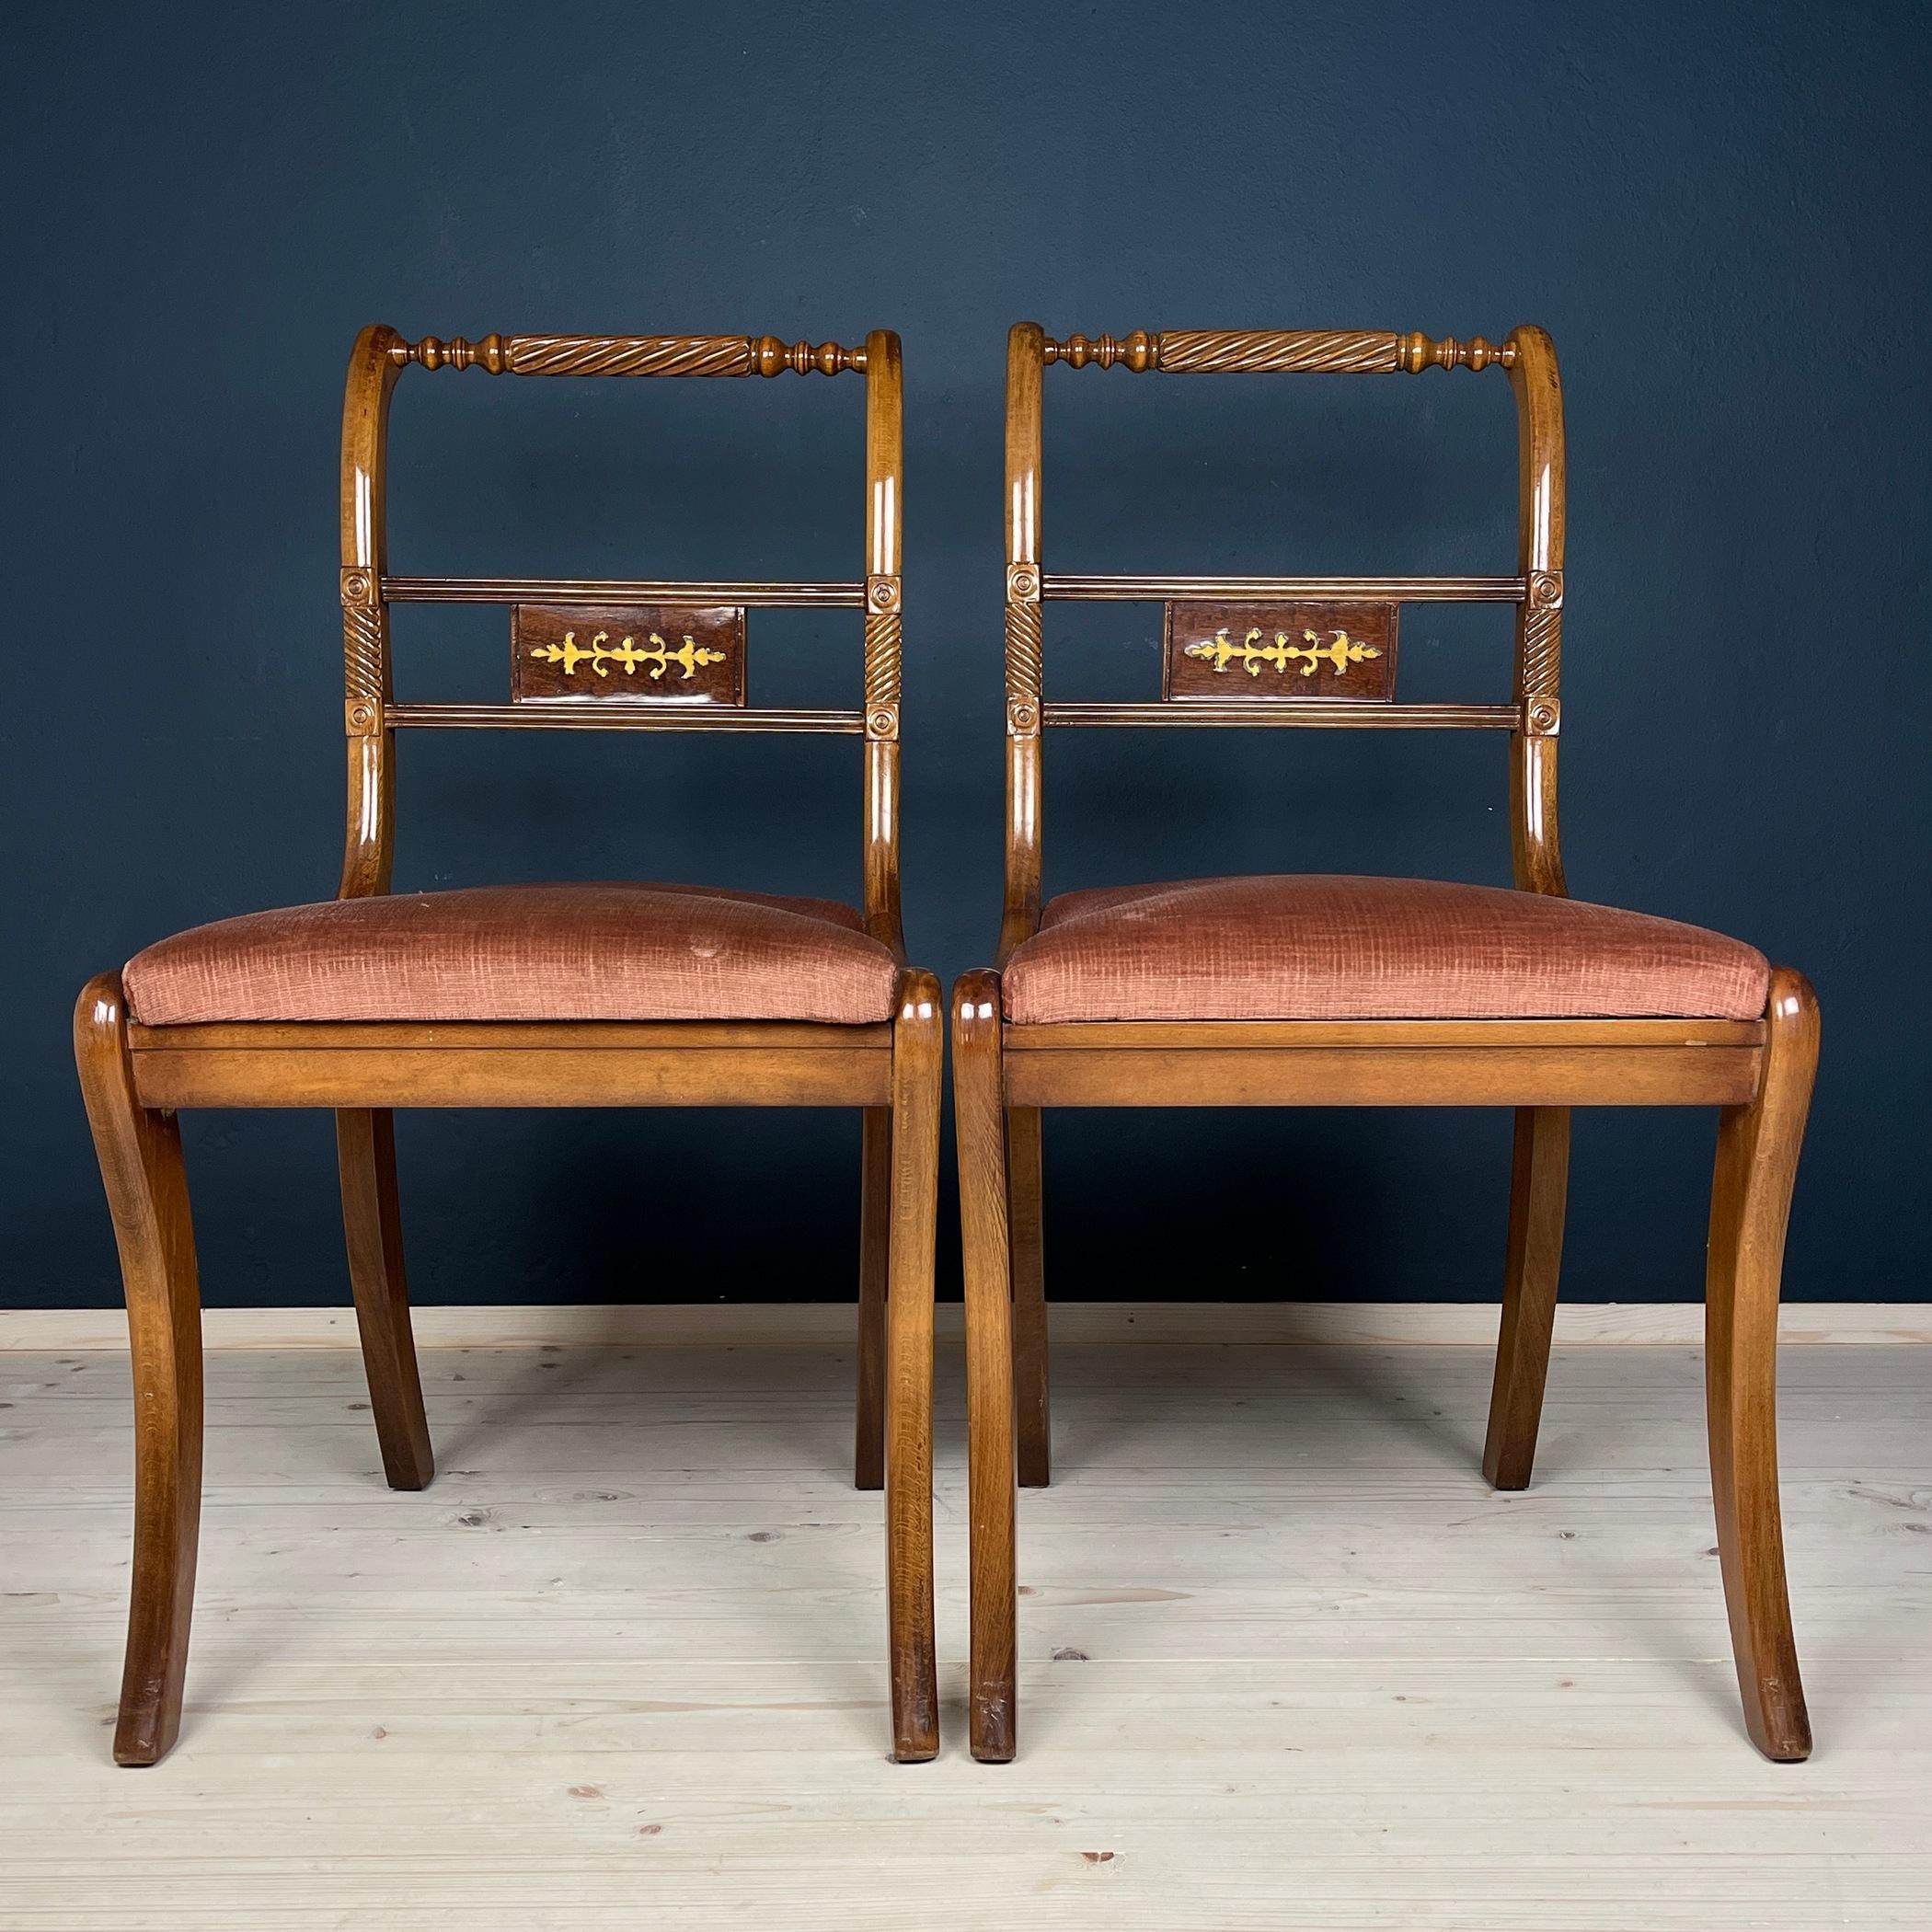 Wir stellen Ihnen dieses charmante Stuhlpaar vor, das in den 1960er Jahren in Italien hergestellt wurde. Trotz der Zeit sind diese Stühle tadellos erhalten geblieben und zeigen ihre dauerhafte Schönheit und hochwertige Handwerkskunst. Der